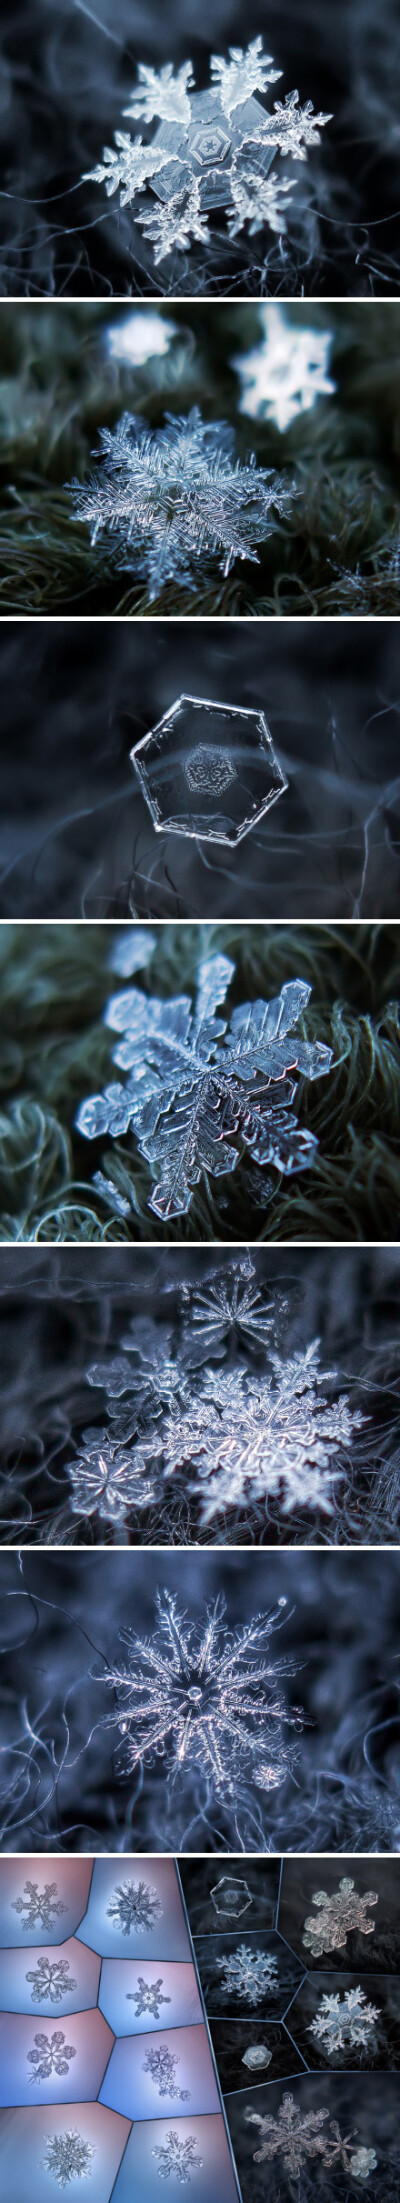 近观雪花之美，每一片雪花，都是独一无二的自然杰作。来自俄罗斯摄影师 Alexey Kljatov 的显微摄影作品